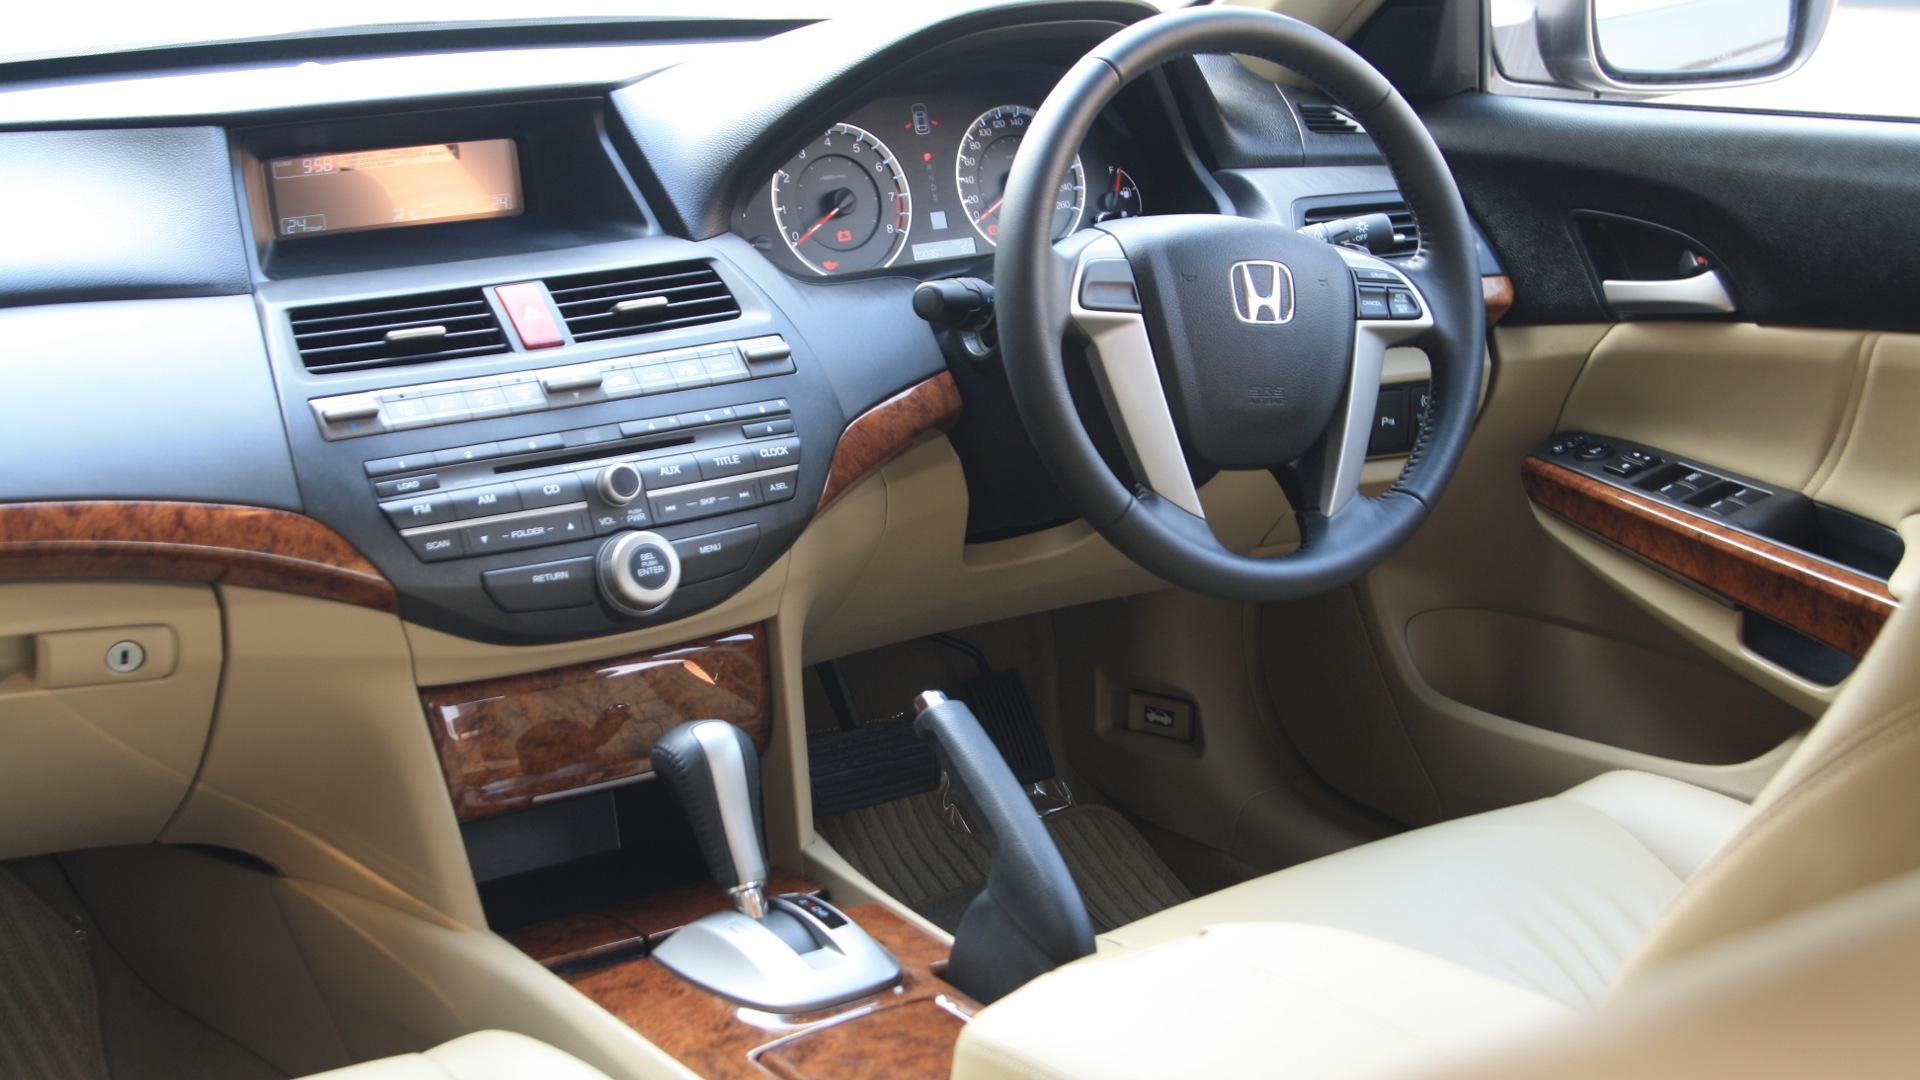 Honda Accord 2013 2 4 At Interior Car Photos Overdrive